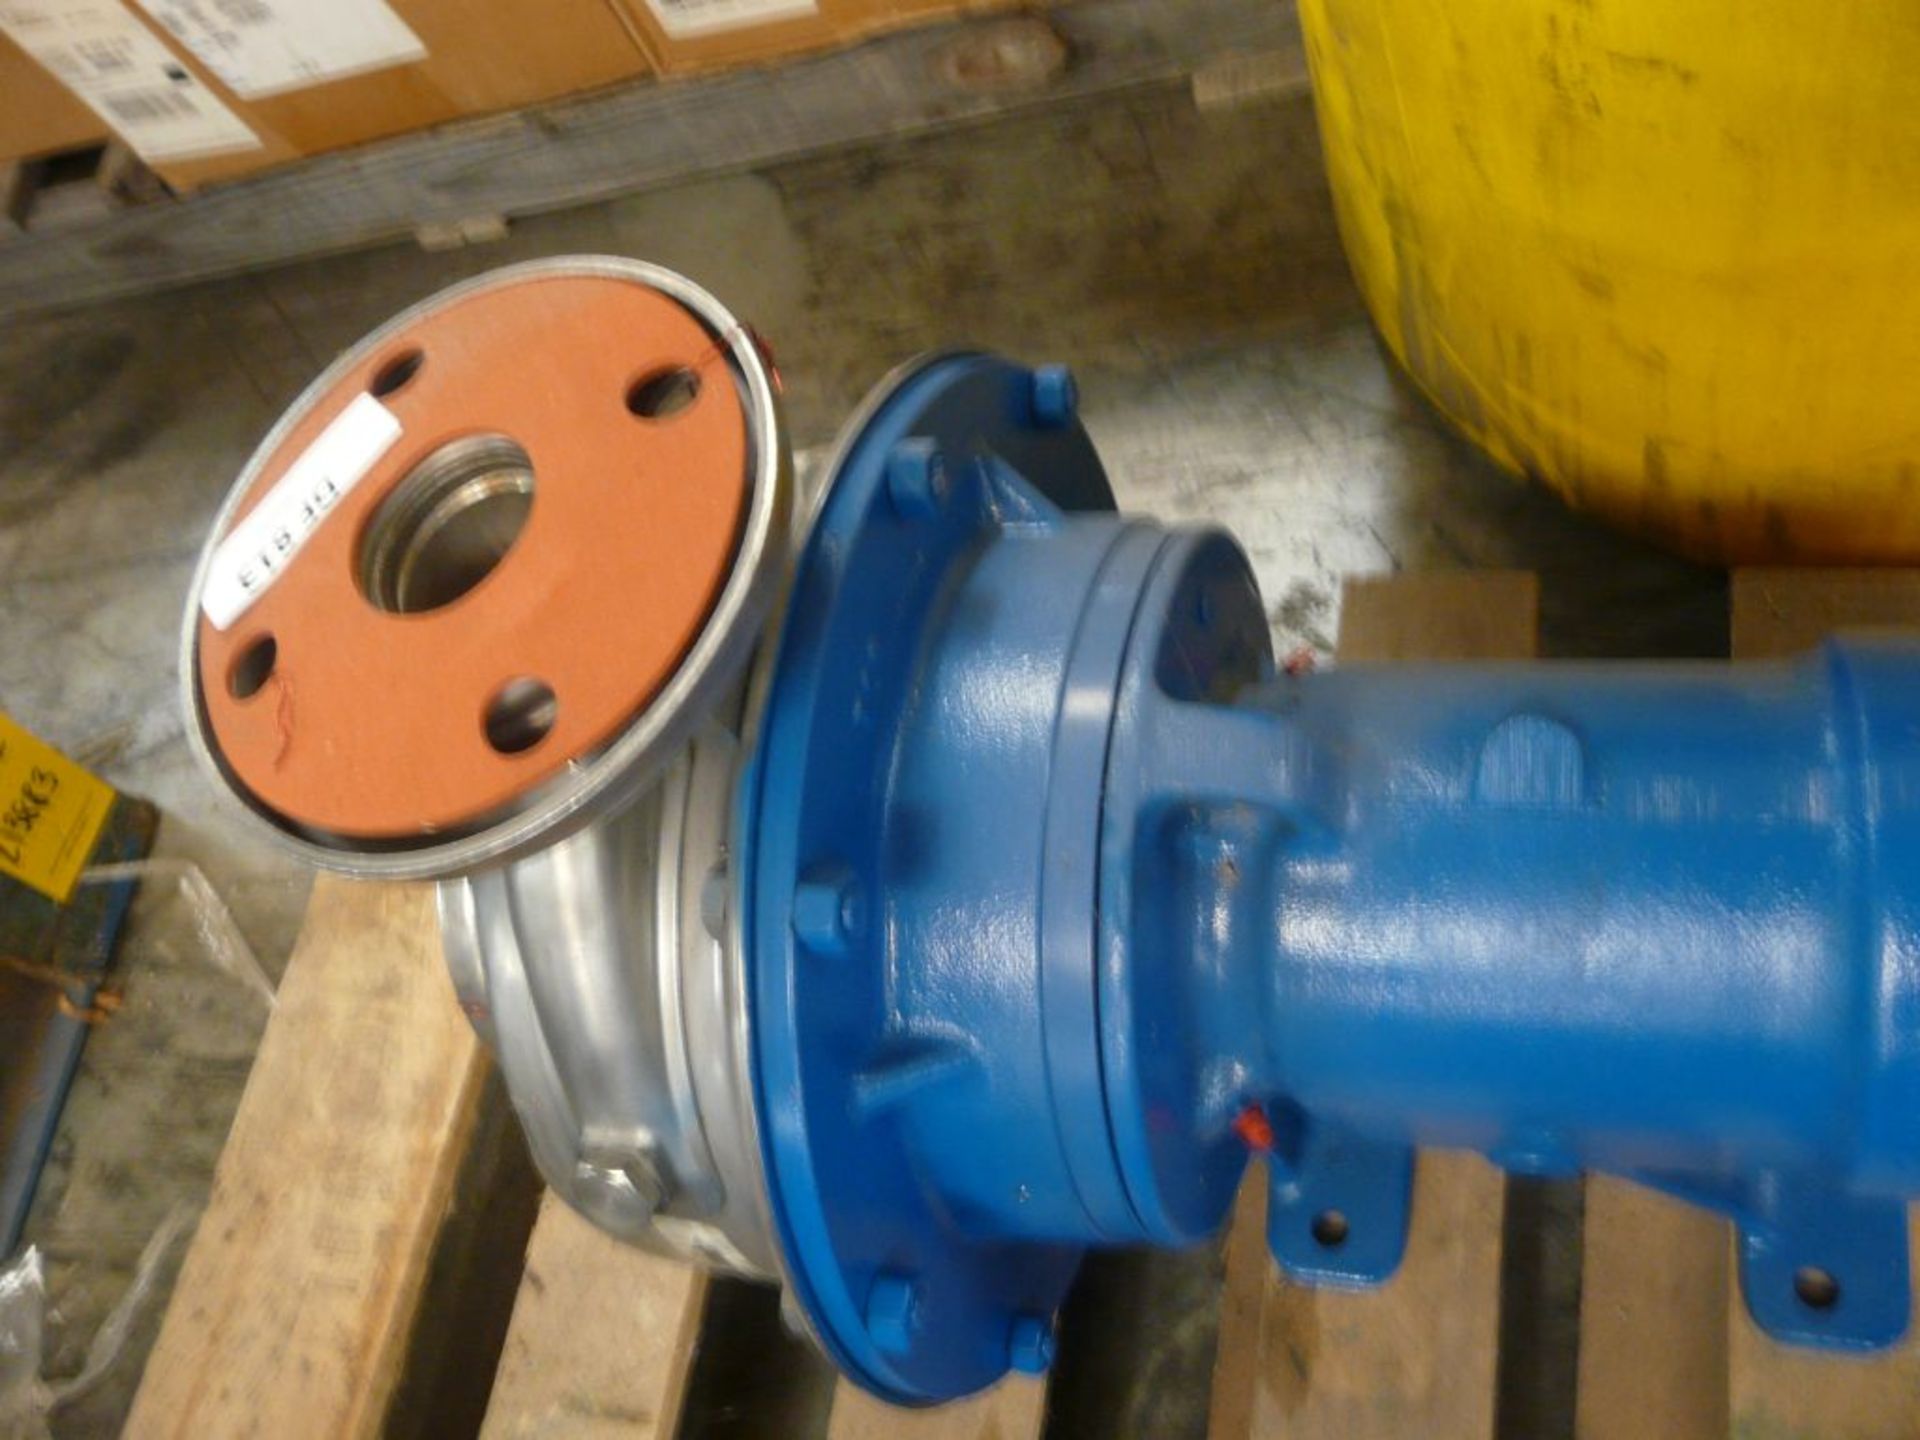 G&L Pumps Pump - Model No. SSR; Cat No. 228308.1 - Image 3 of 5